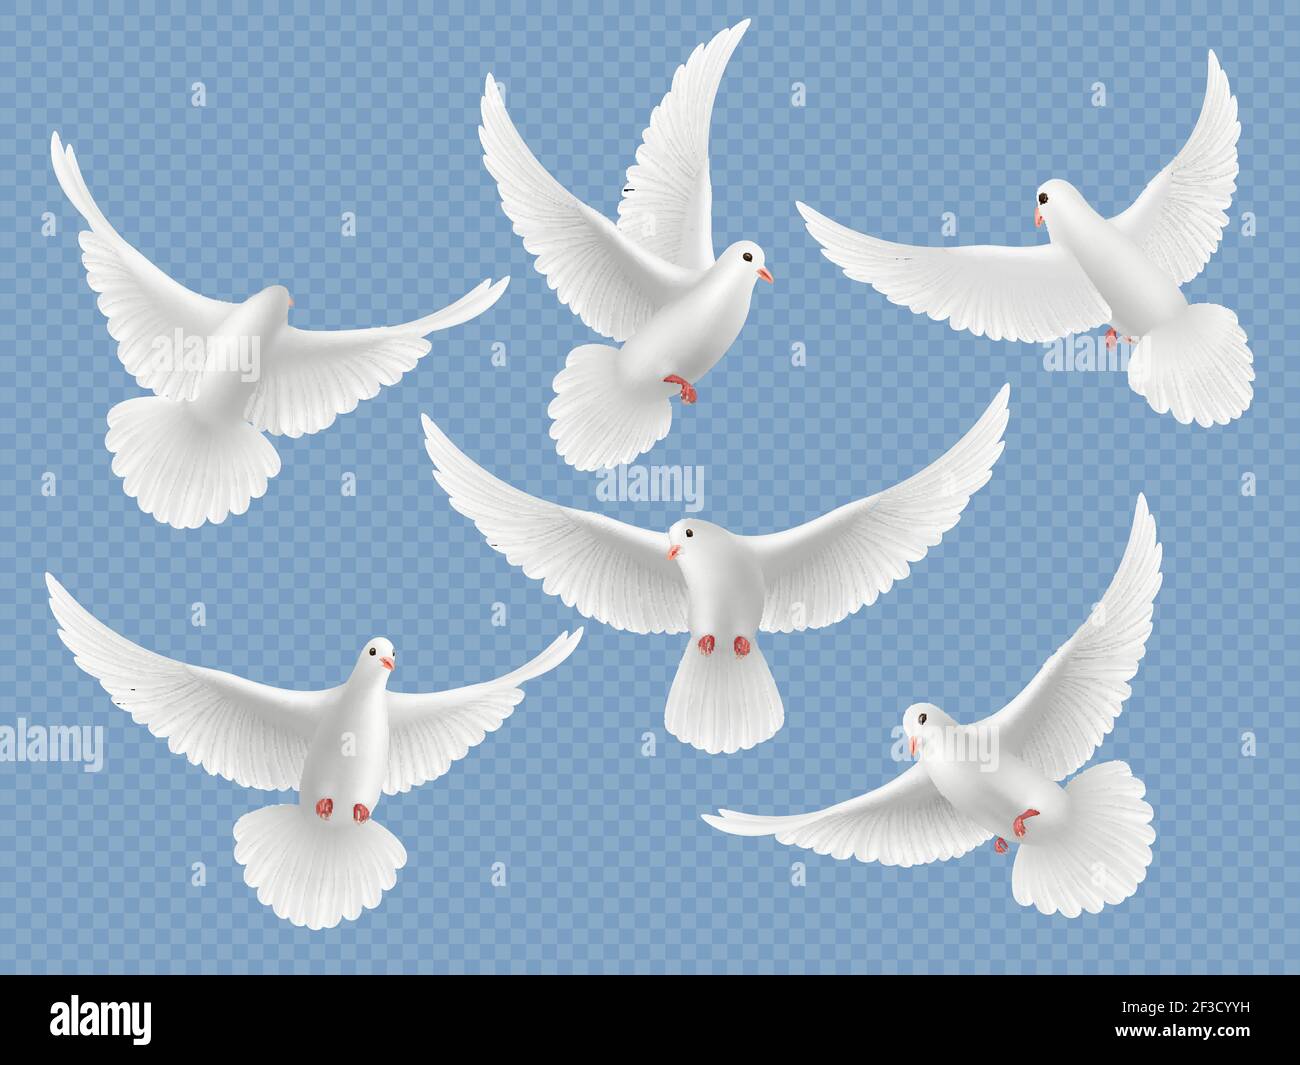 Realistische Tauben. Weiße Freiheit fliegende Vögel Tauben Religion Symbole Vektor Bilder Sammlung Stock Vektor